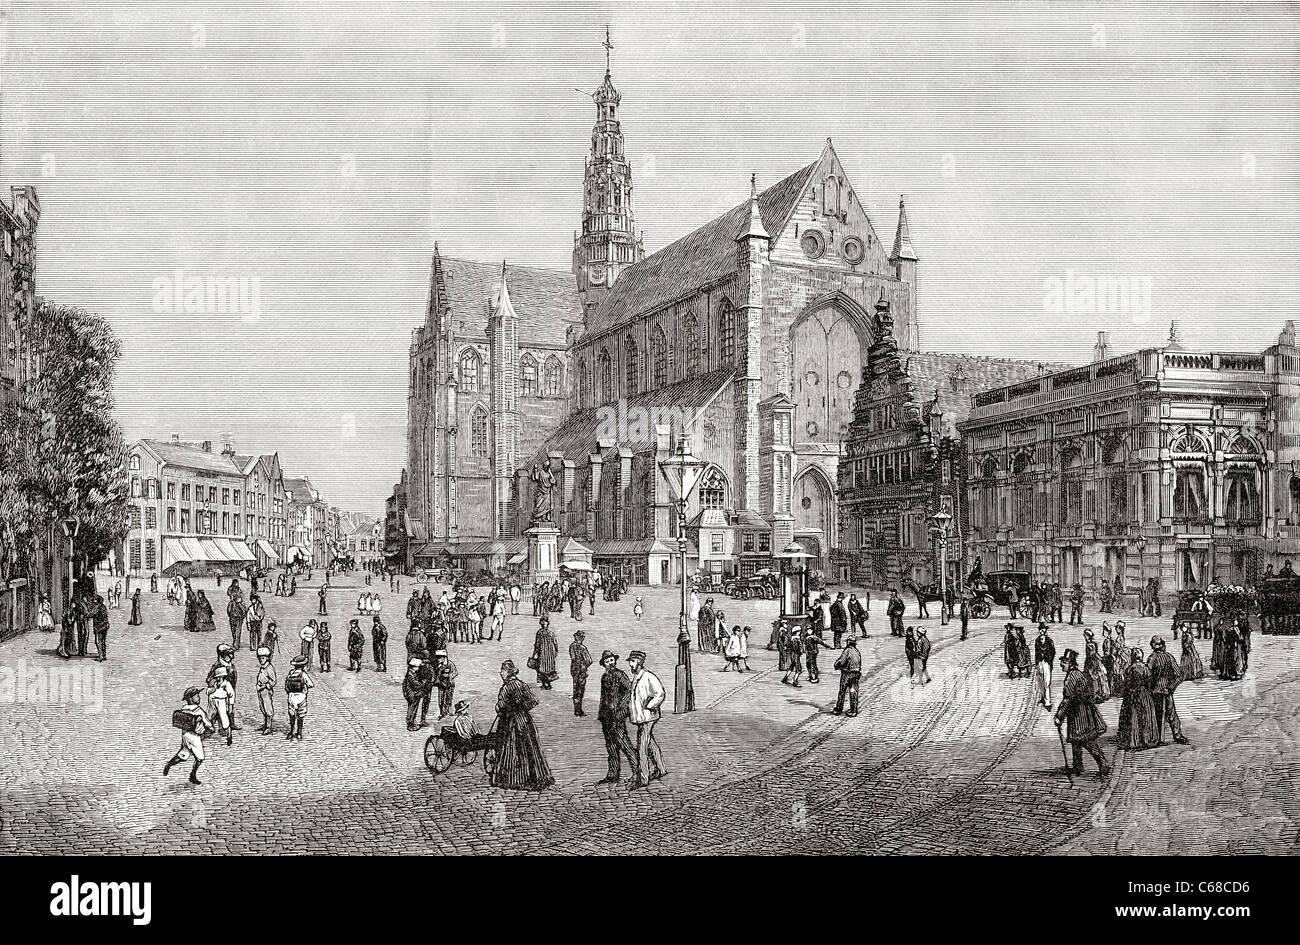 Der Grote Kerk oder St. Bavokerk in der Grote Markt, Haarlem, Niederlande im 19. Jahrhundert. Stockfoto